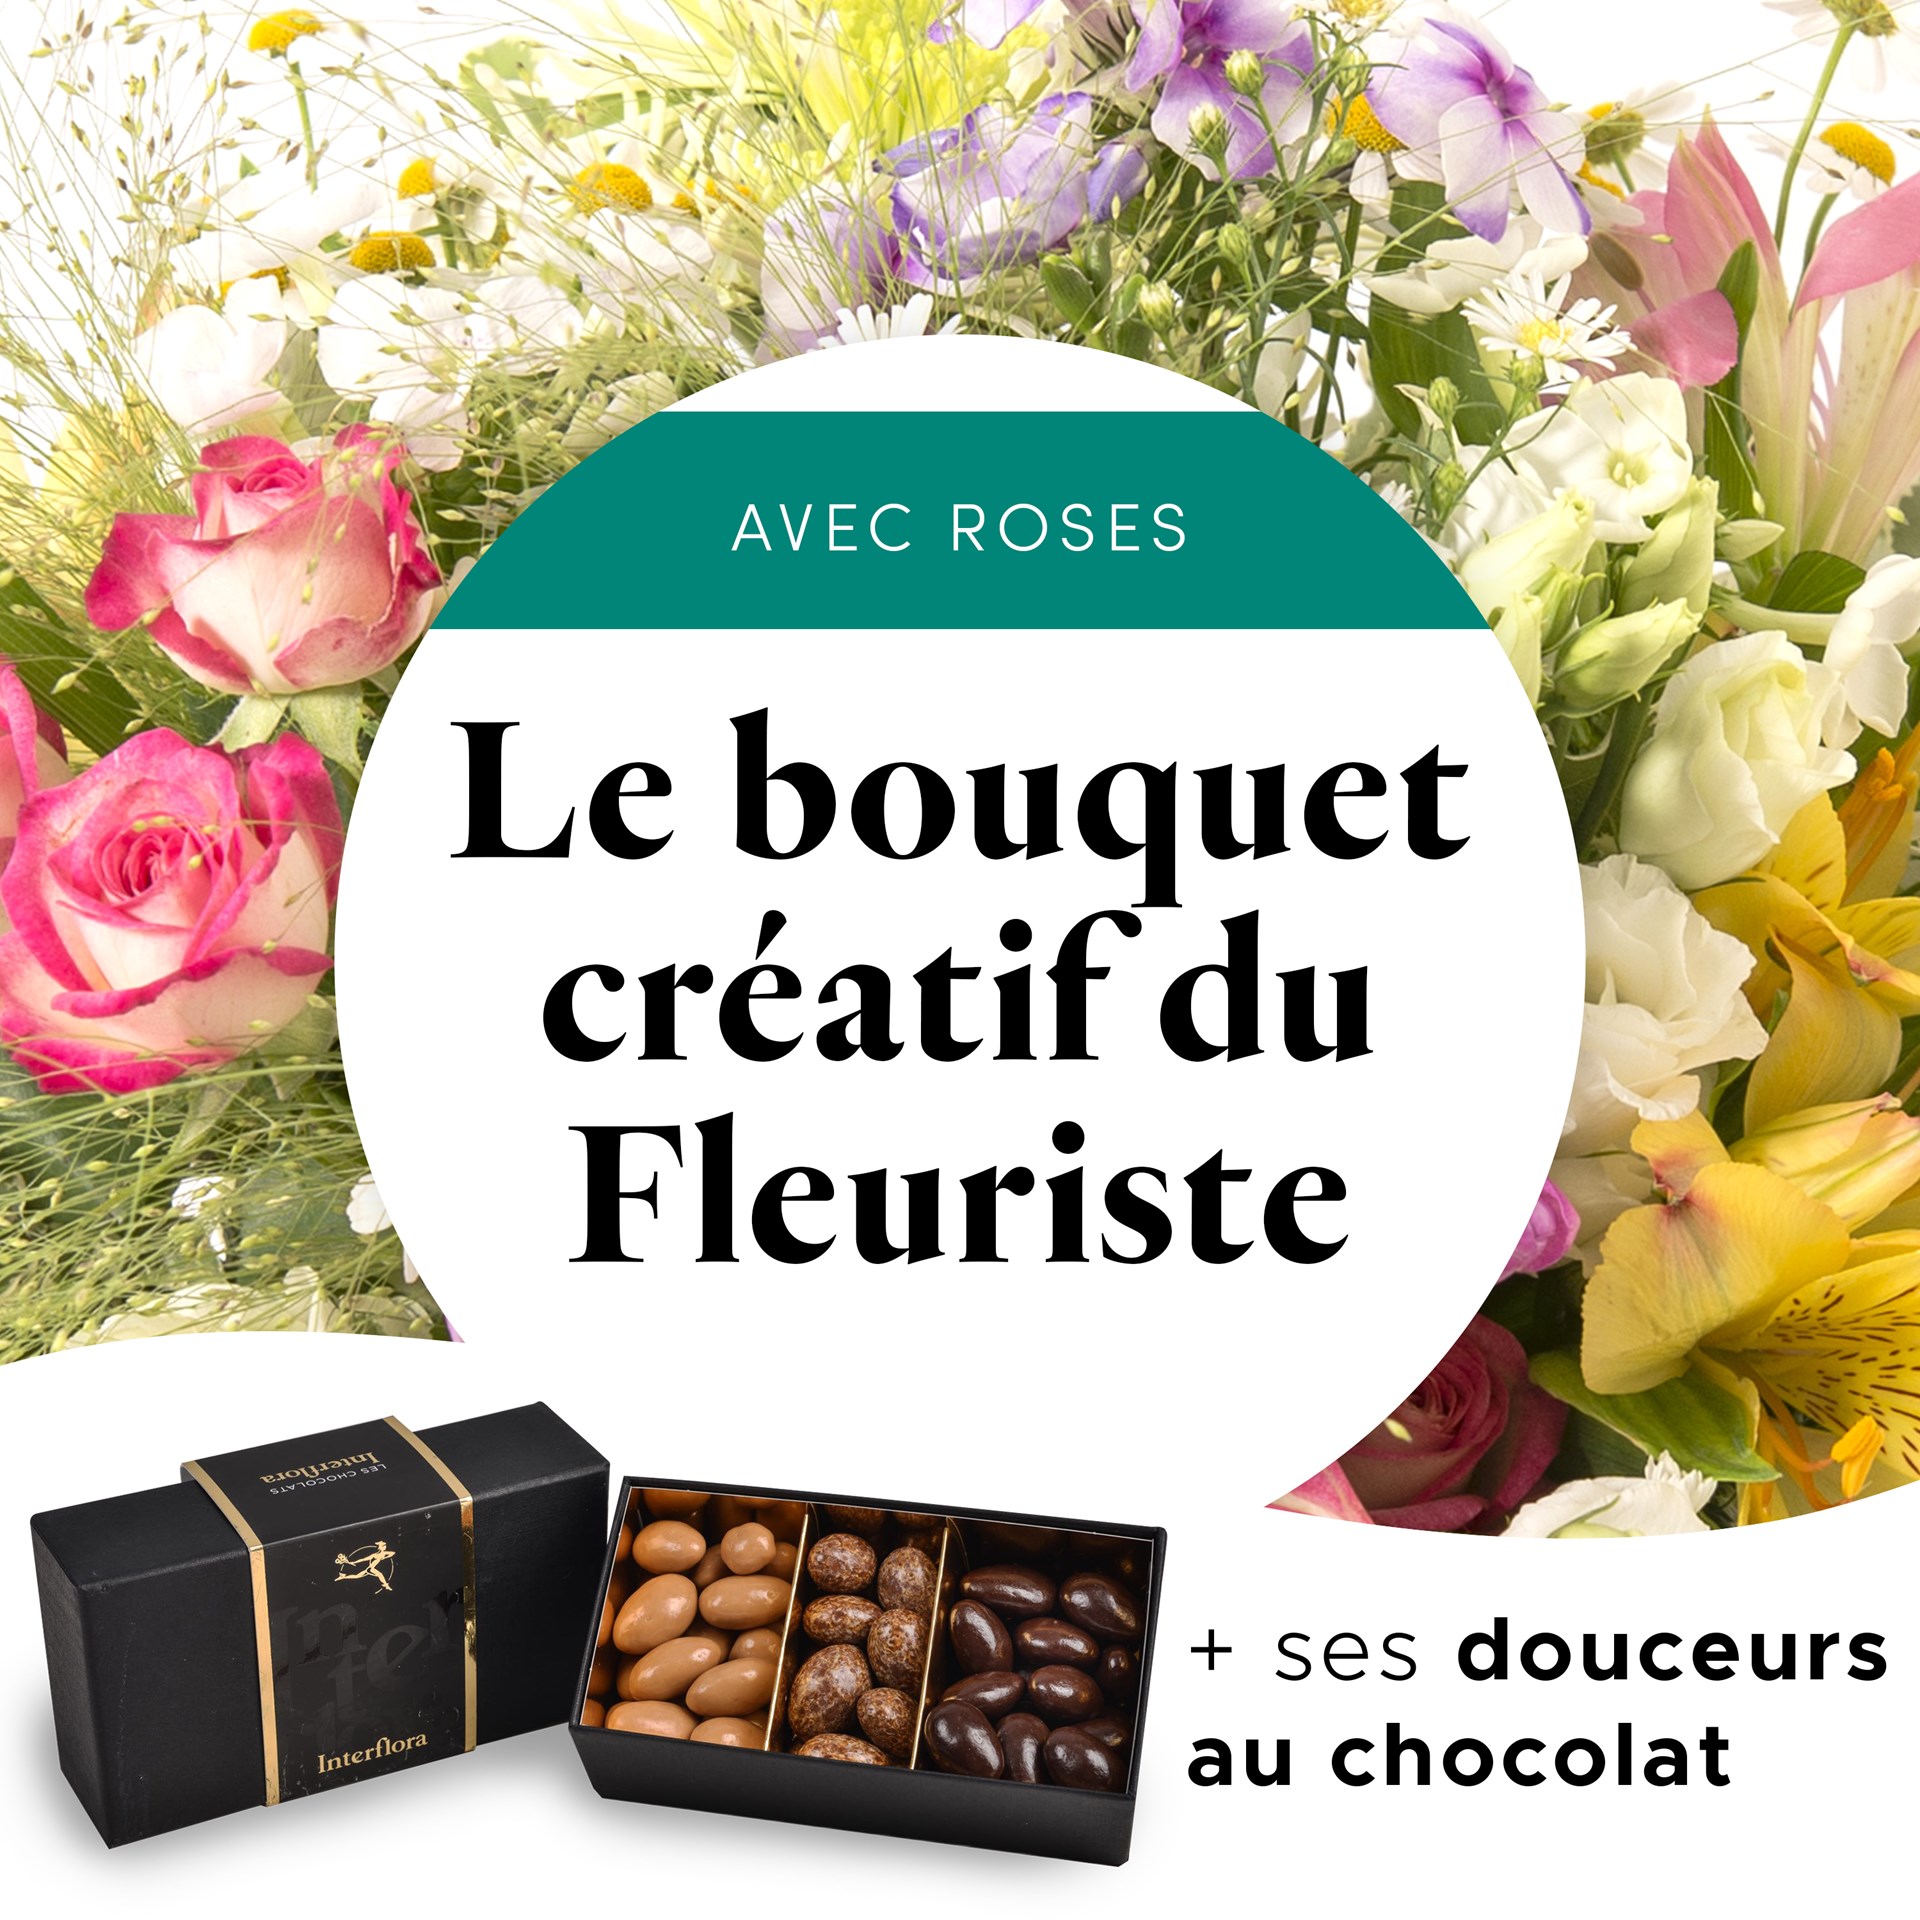 product image for Bouquet du fleuriste multicolore et ses amandes au chocolat